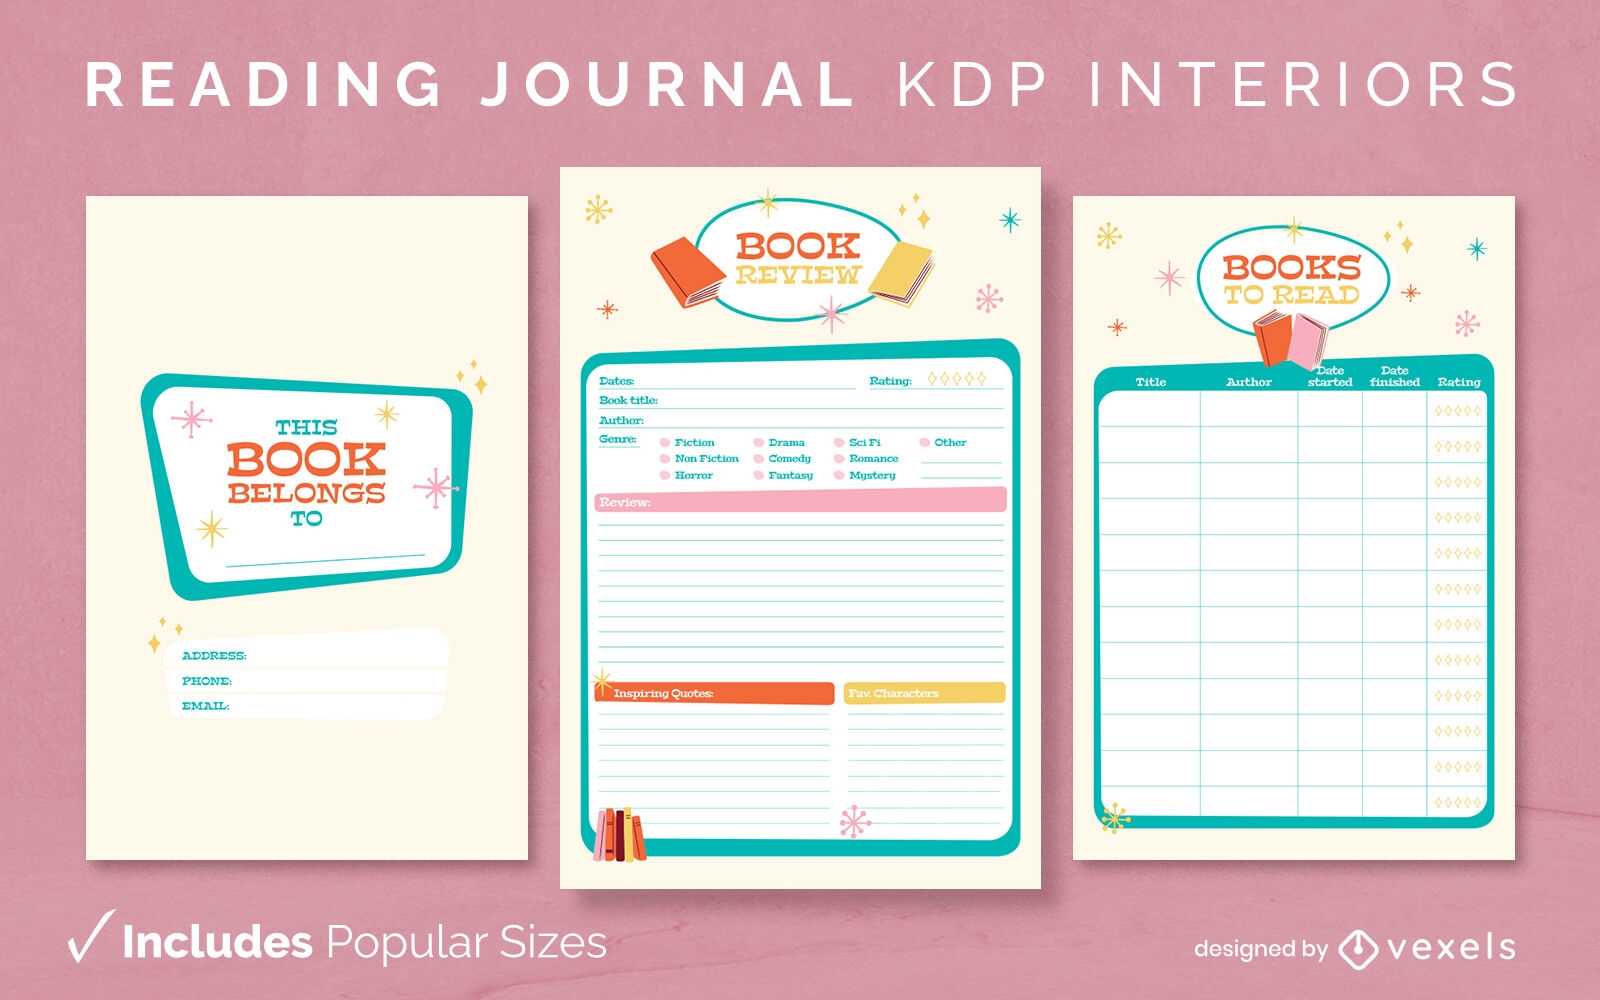 Vintage reading journal design template KDP